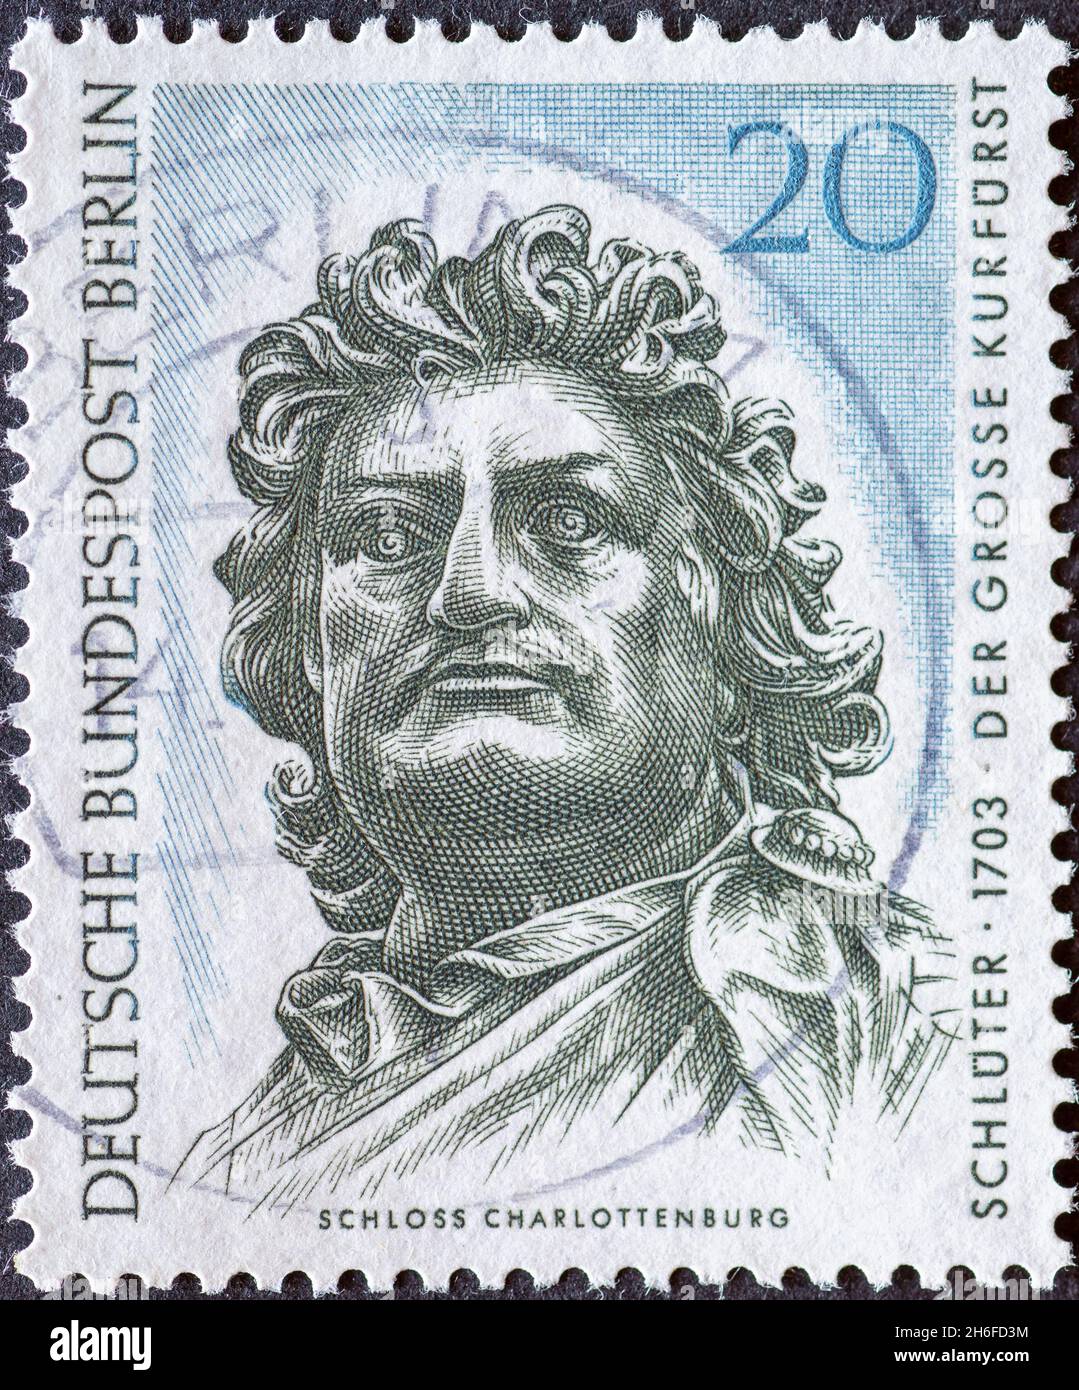 ALLEMAGNE, Berlin - VERS 1967 un timbre-poste de l'Allemagne, Berlin montrant le chef du Grand électeur (statue équestre) par Andreas Schlueter.Texte Banque D'Images